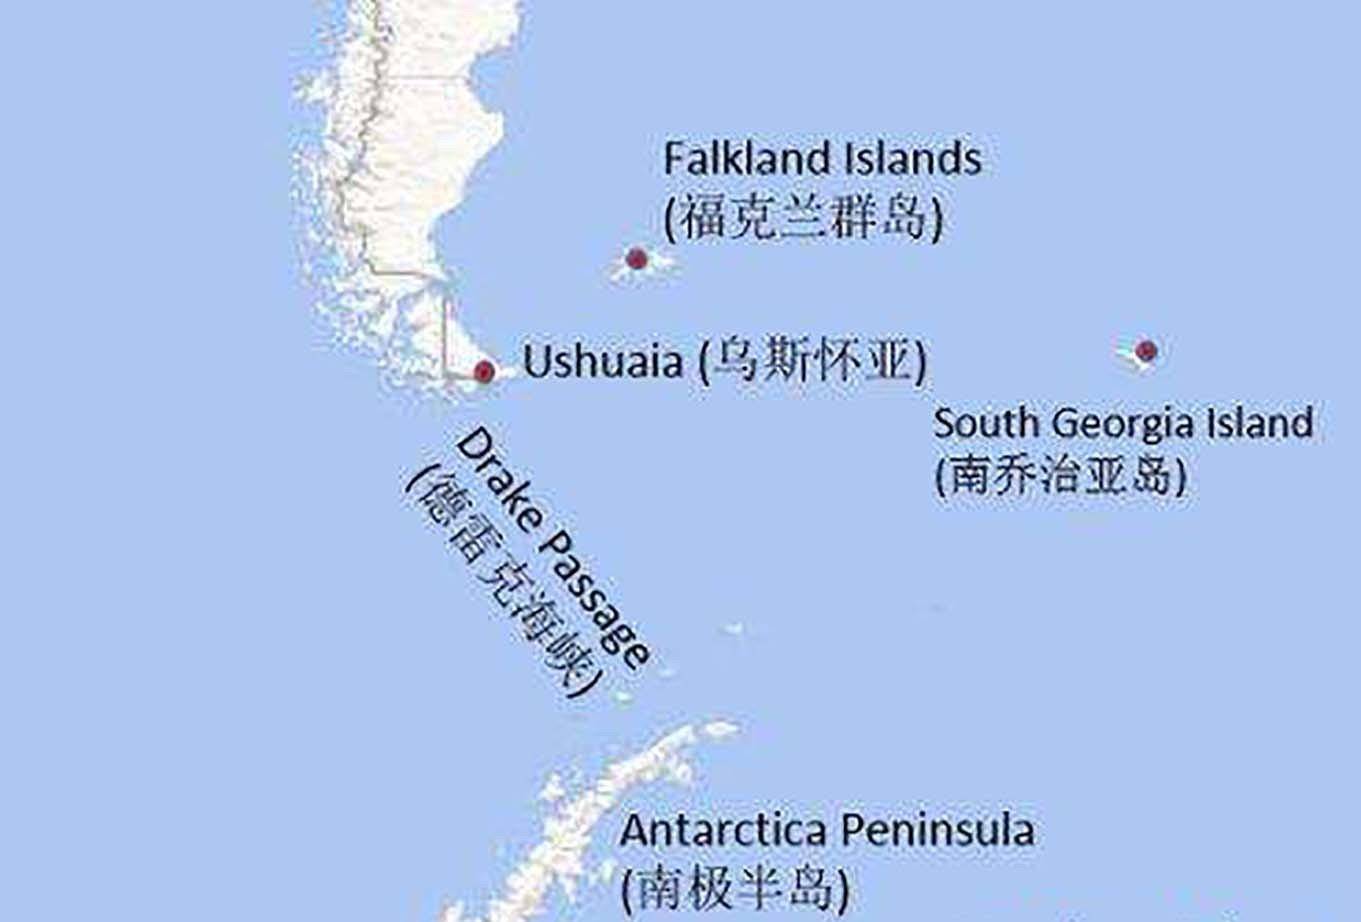 马岛距离英国13000公里,英国为何会为了马岛与阿根廷大打出手?